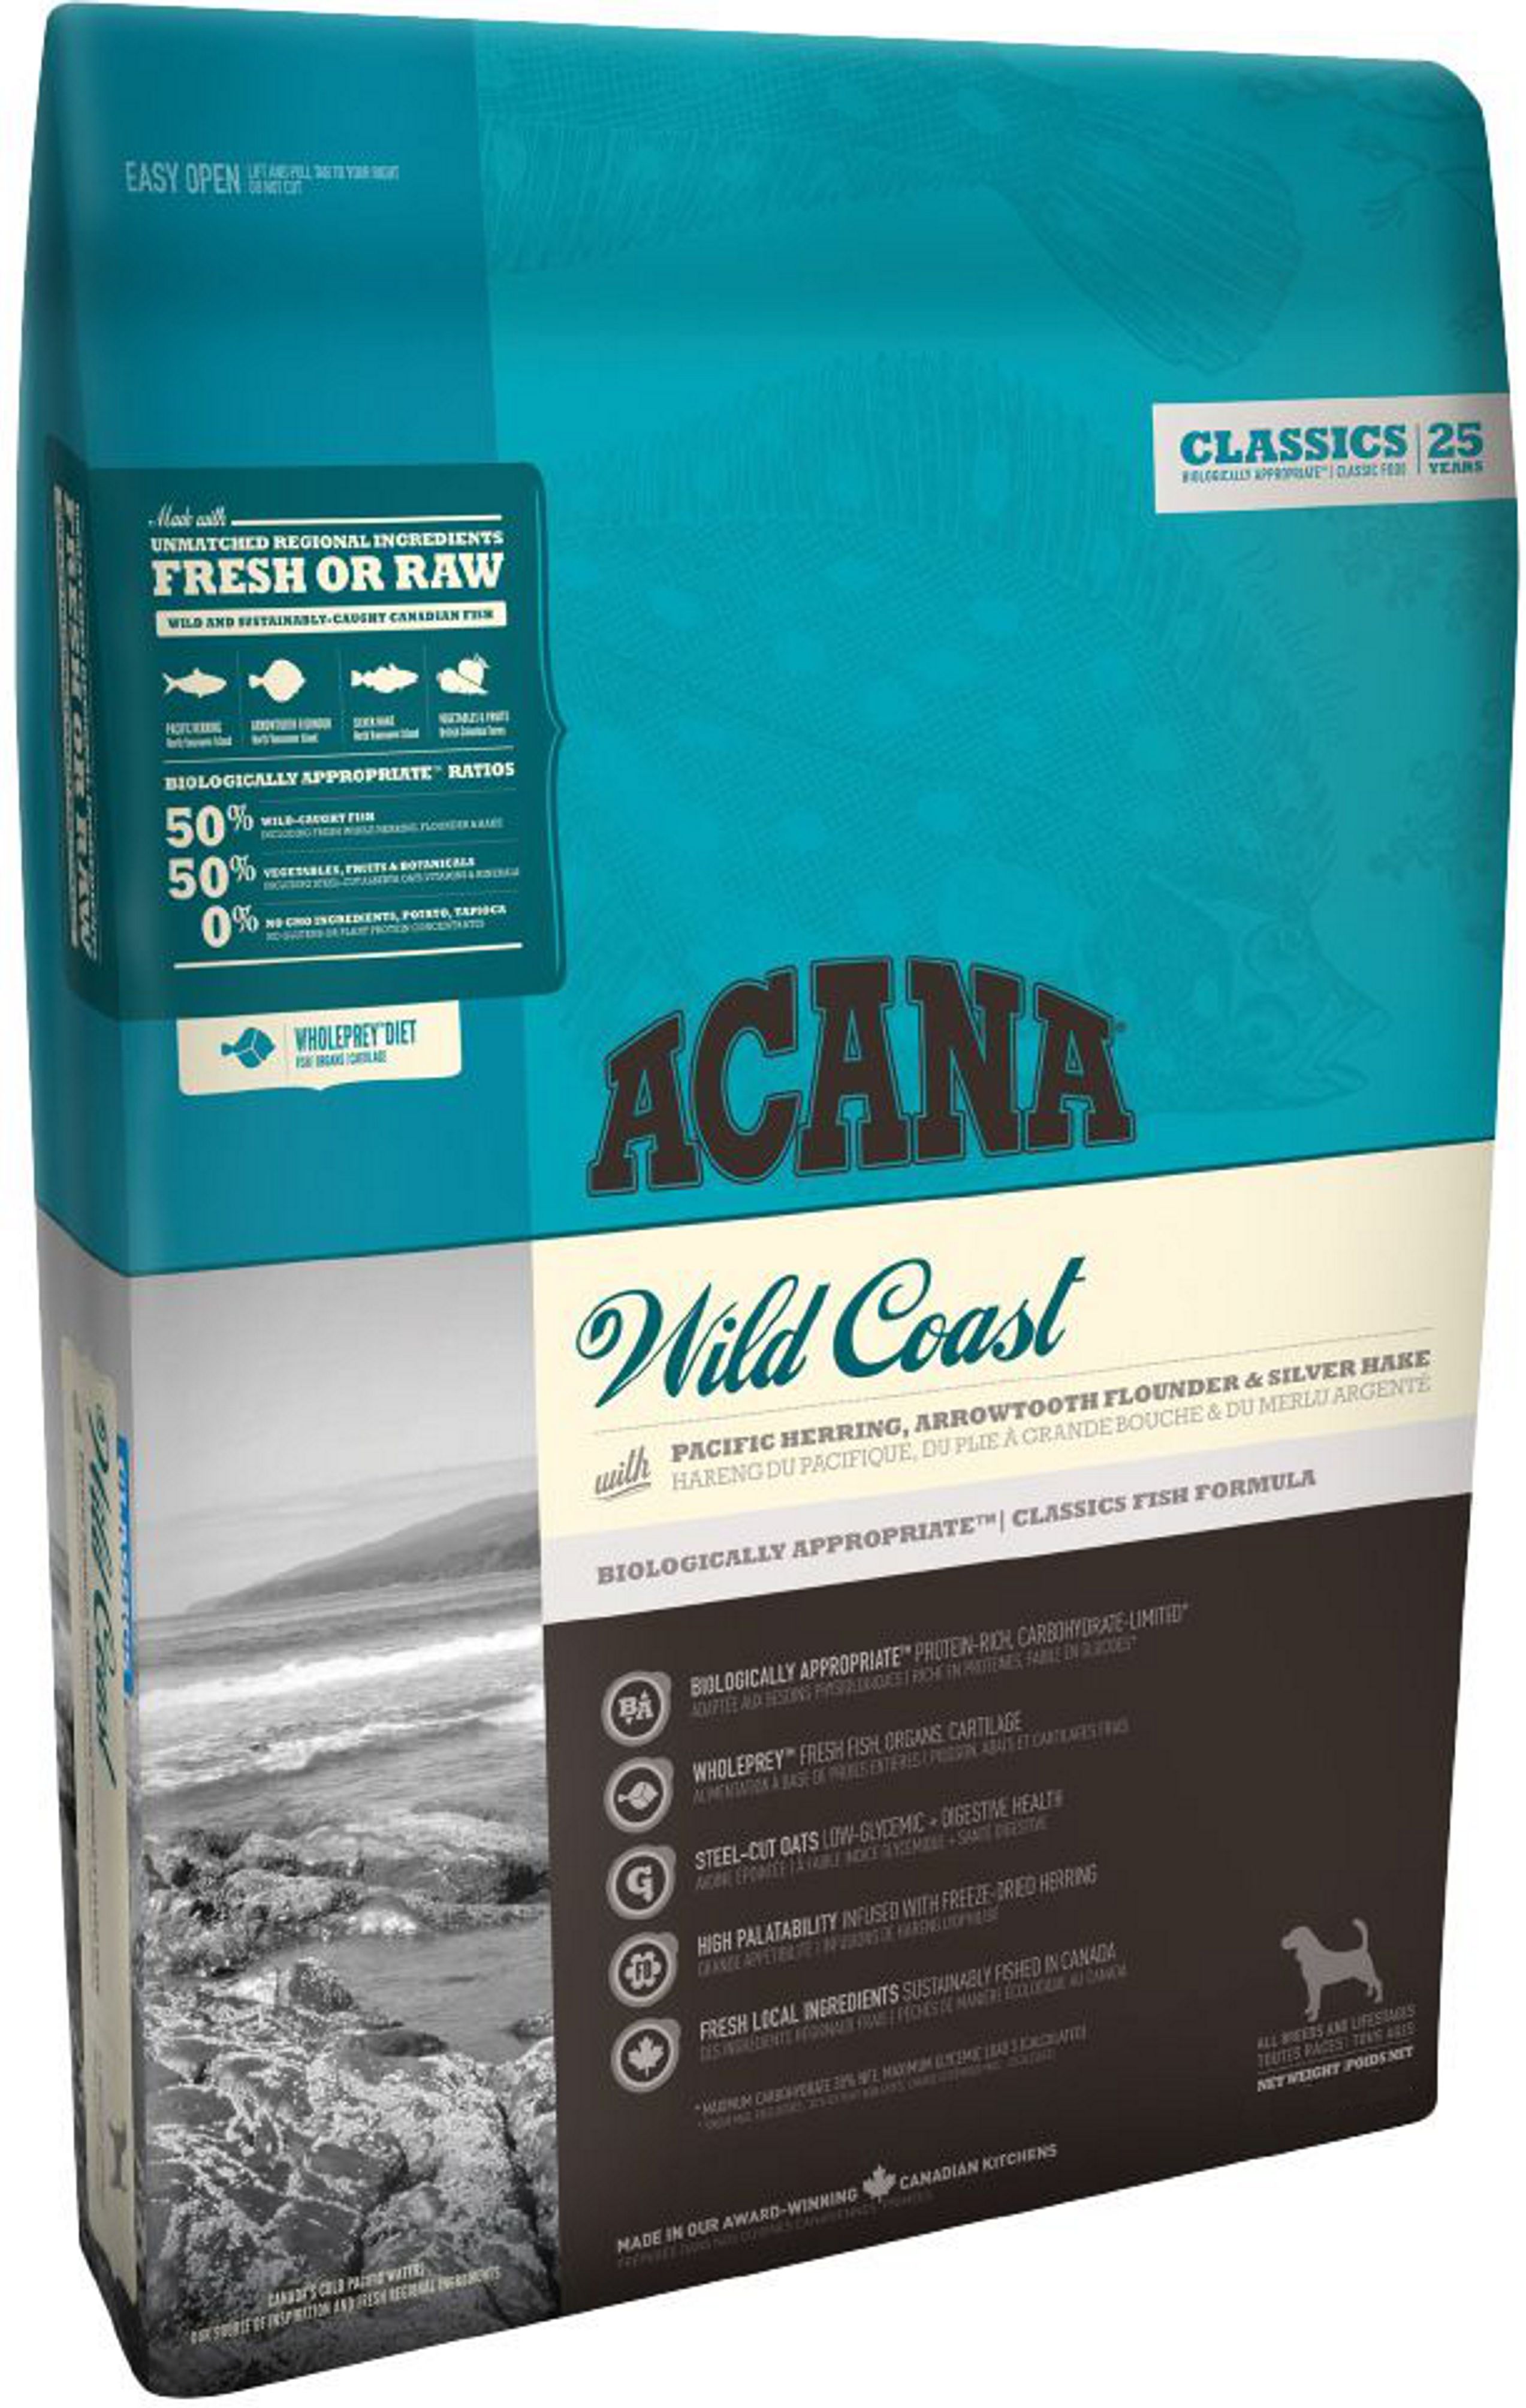 Acana Wild Coast Сельдь/Овес для собак 1